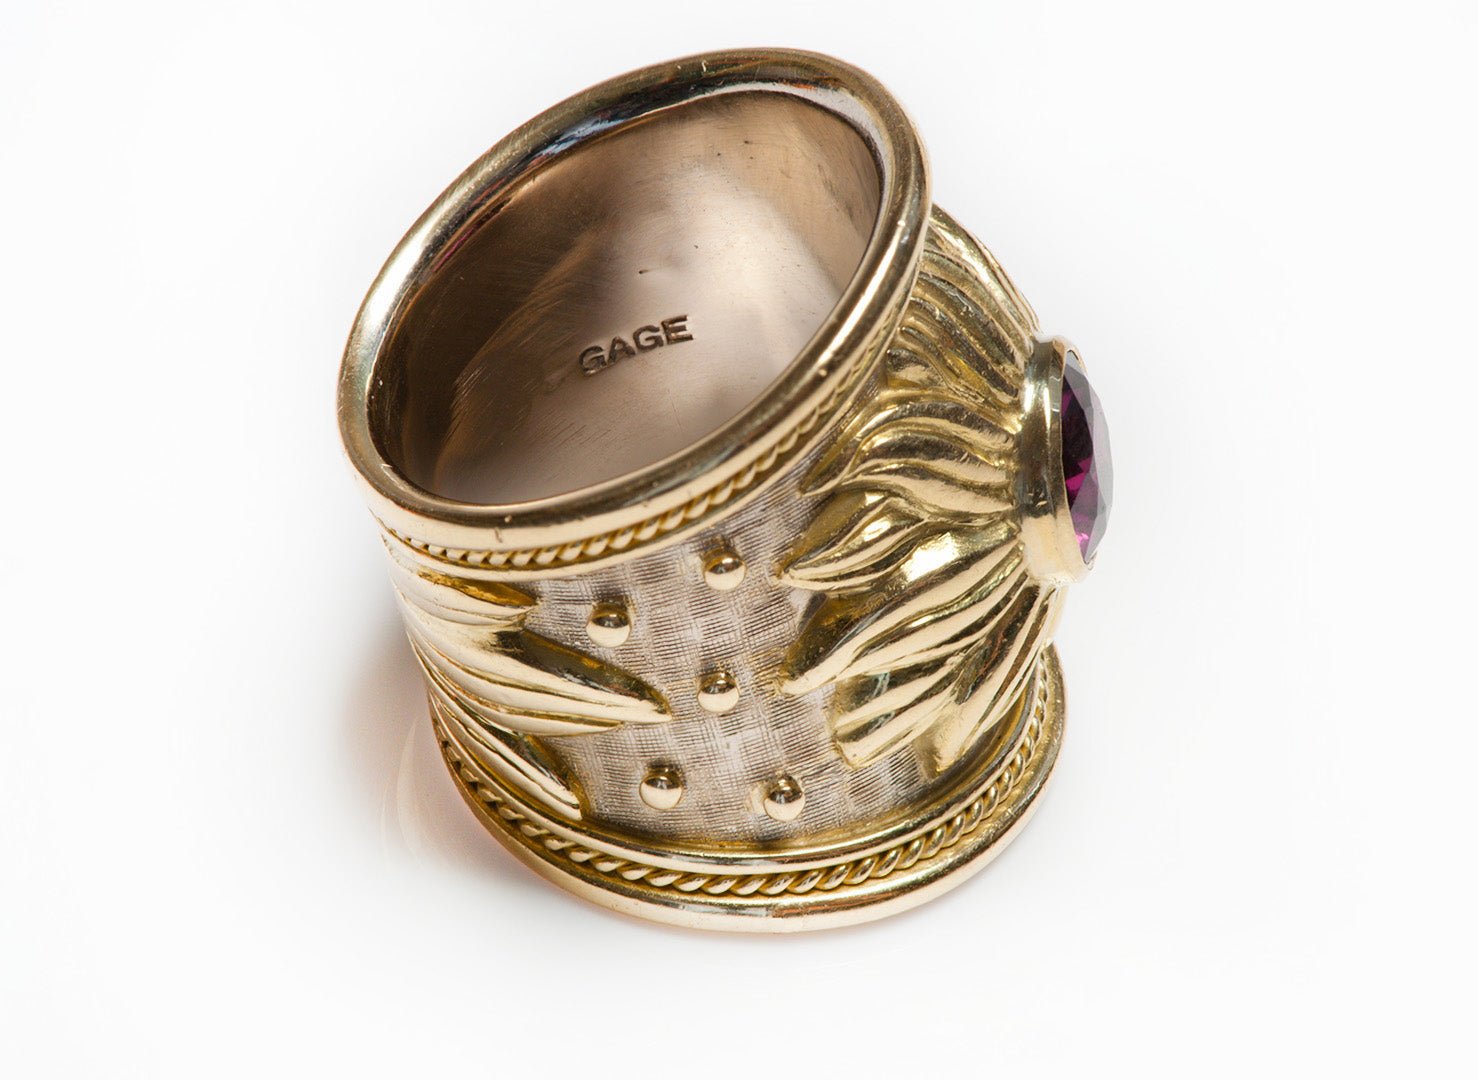 Elizabeth Gage 18K Gold Pink Tourmaline Ring